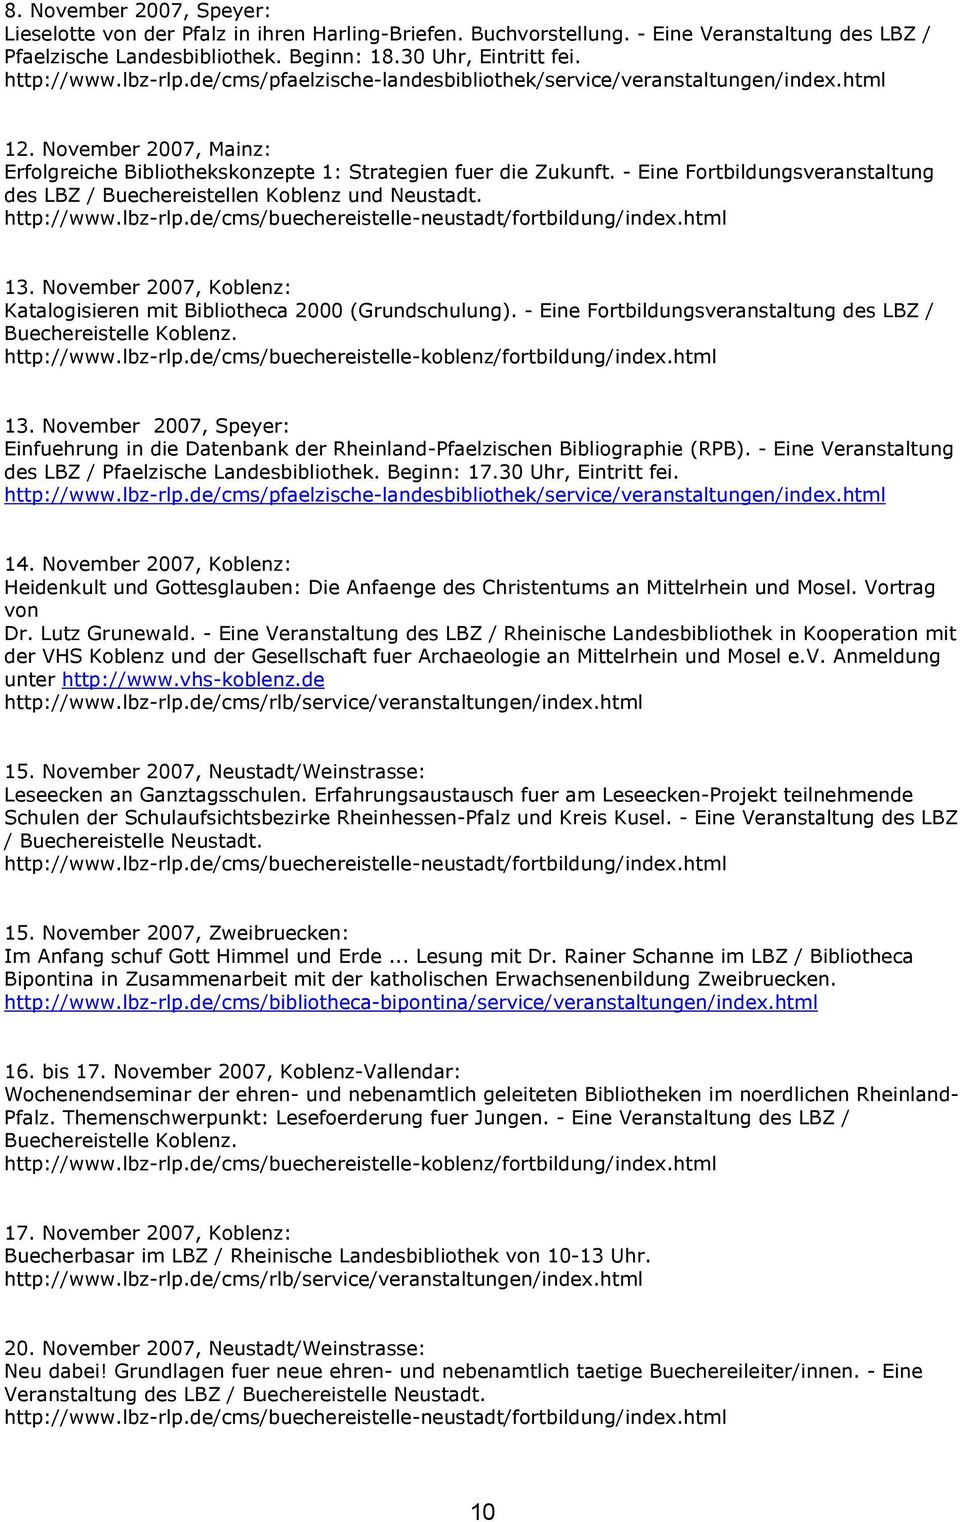 November 2007, Koblenz: Katalogisieren mit Bibliotheca 2000 (Grundschulung). - Eine Fortbildungsveranstaltung des LBZ / Buechereistelle Koblenz. http://www.lbz-rlp.